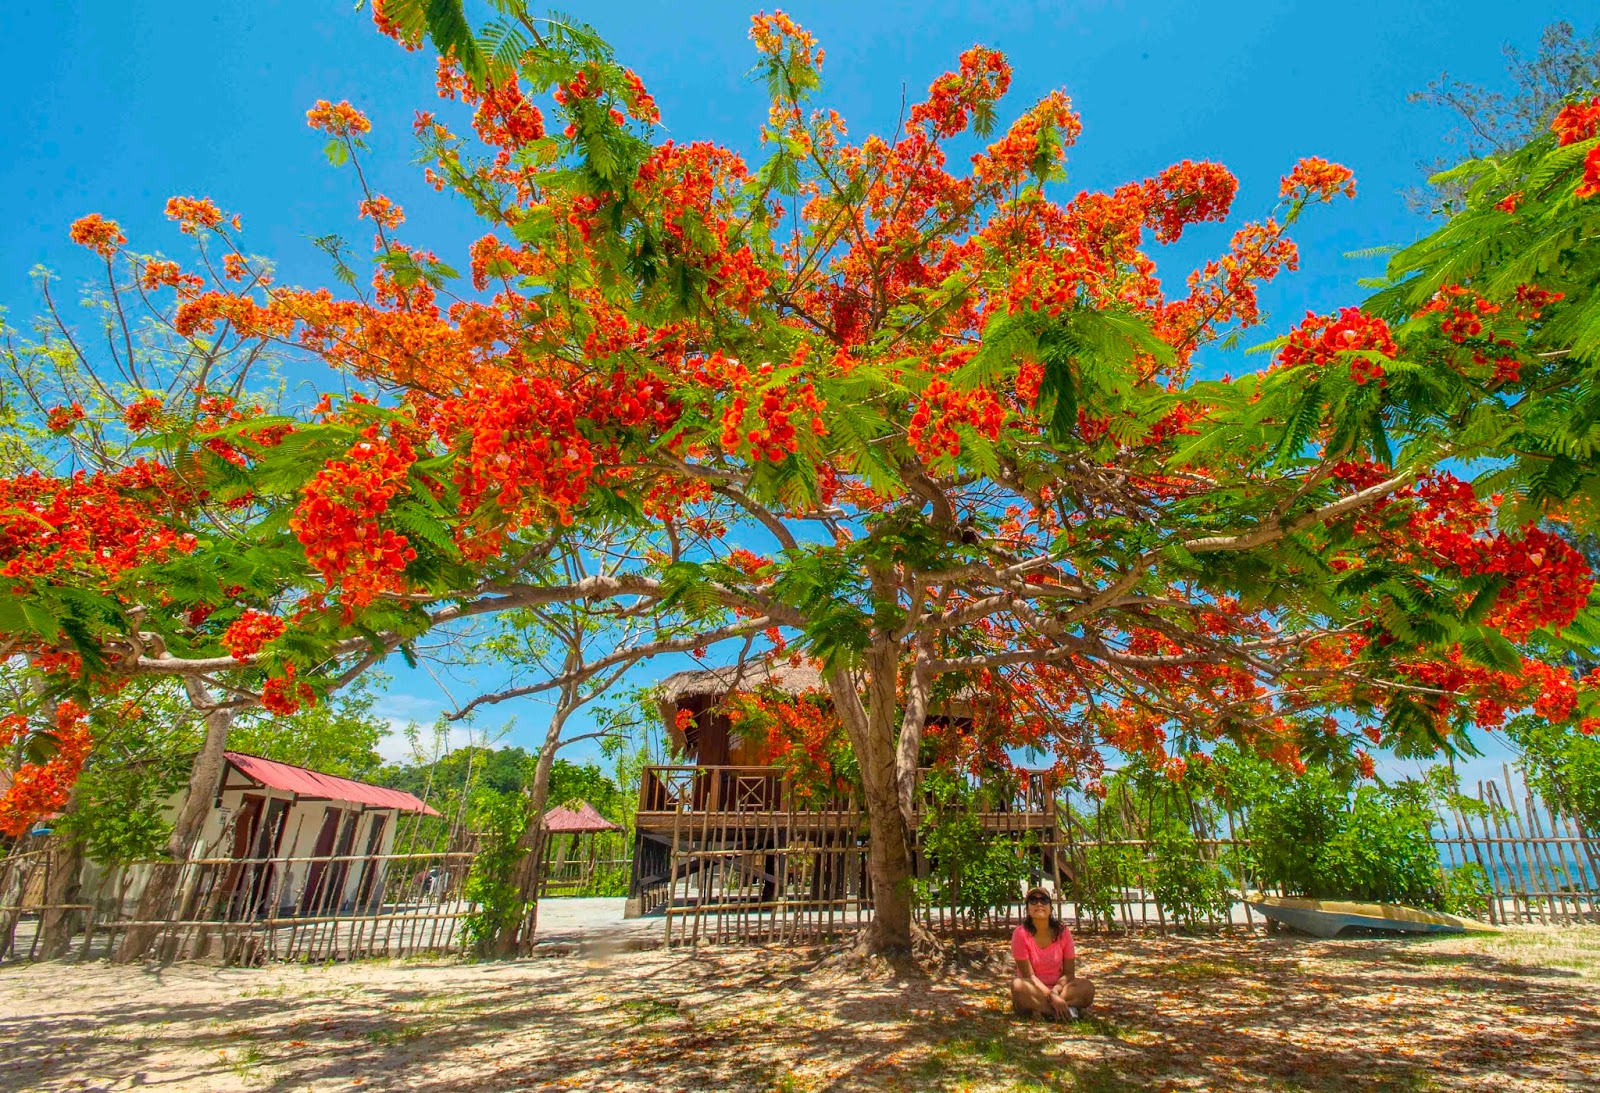 Jual Benih / Biji Pohon Flamboyan Merah - TamanBibit.com